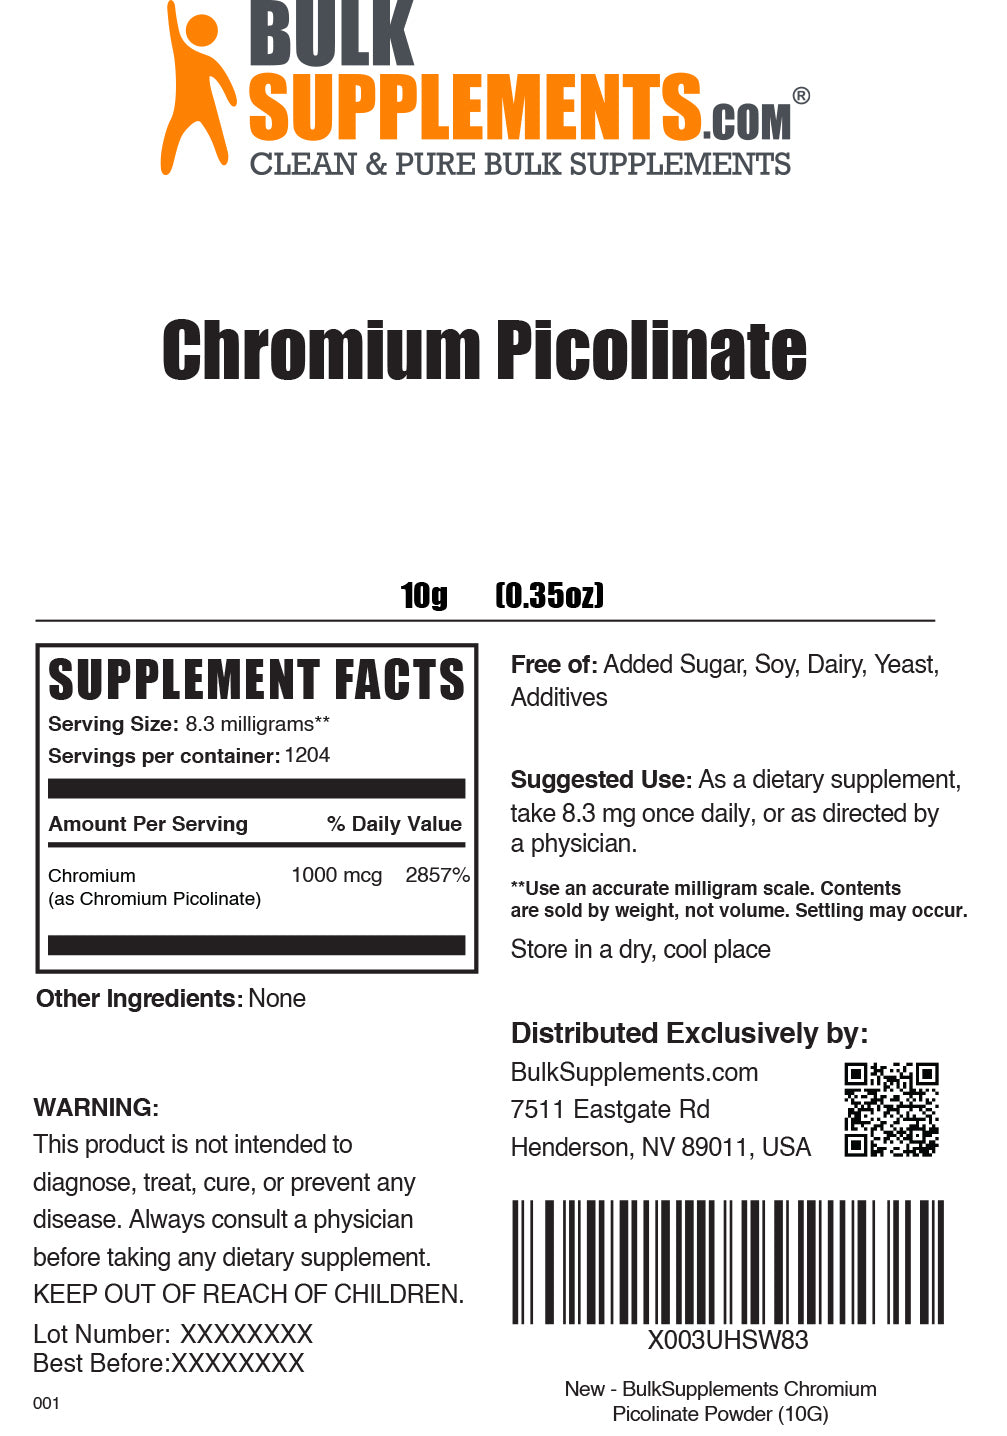 10g of Chromium Picolinate Supplement Facts